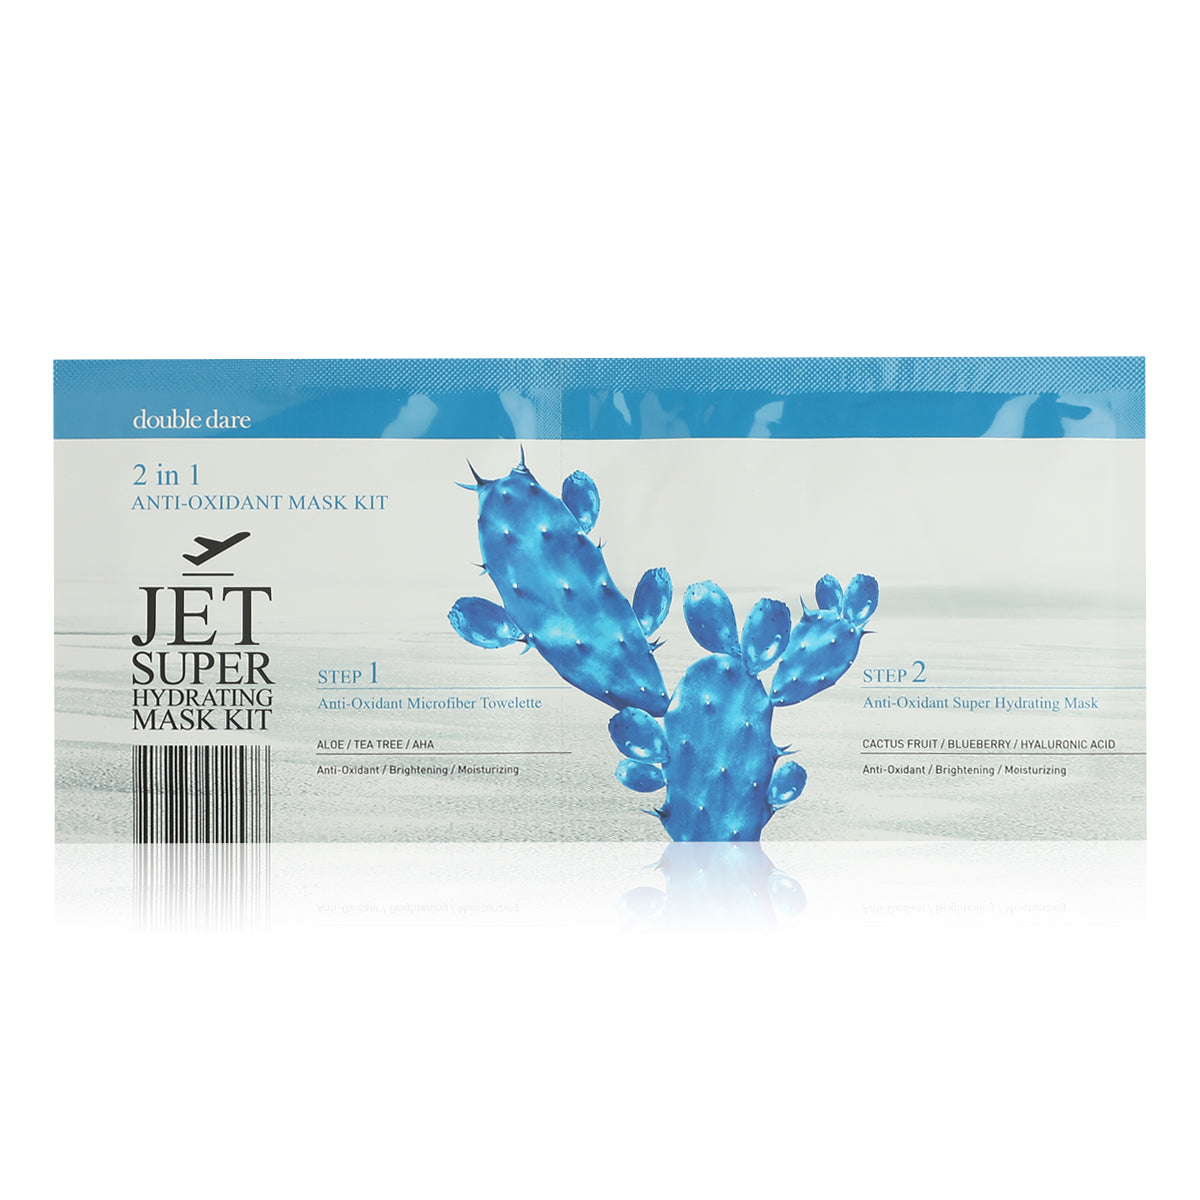 JET Super Hydrating Mask Kit 2in1 Anti-Oxidant Mask Kit